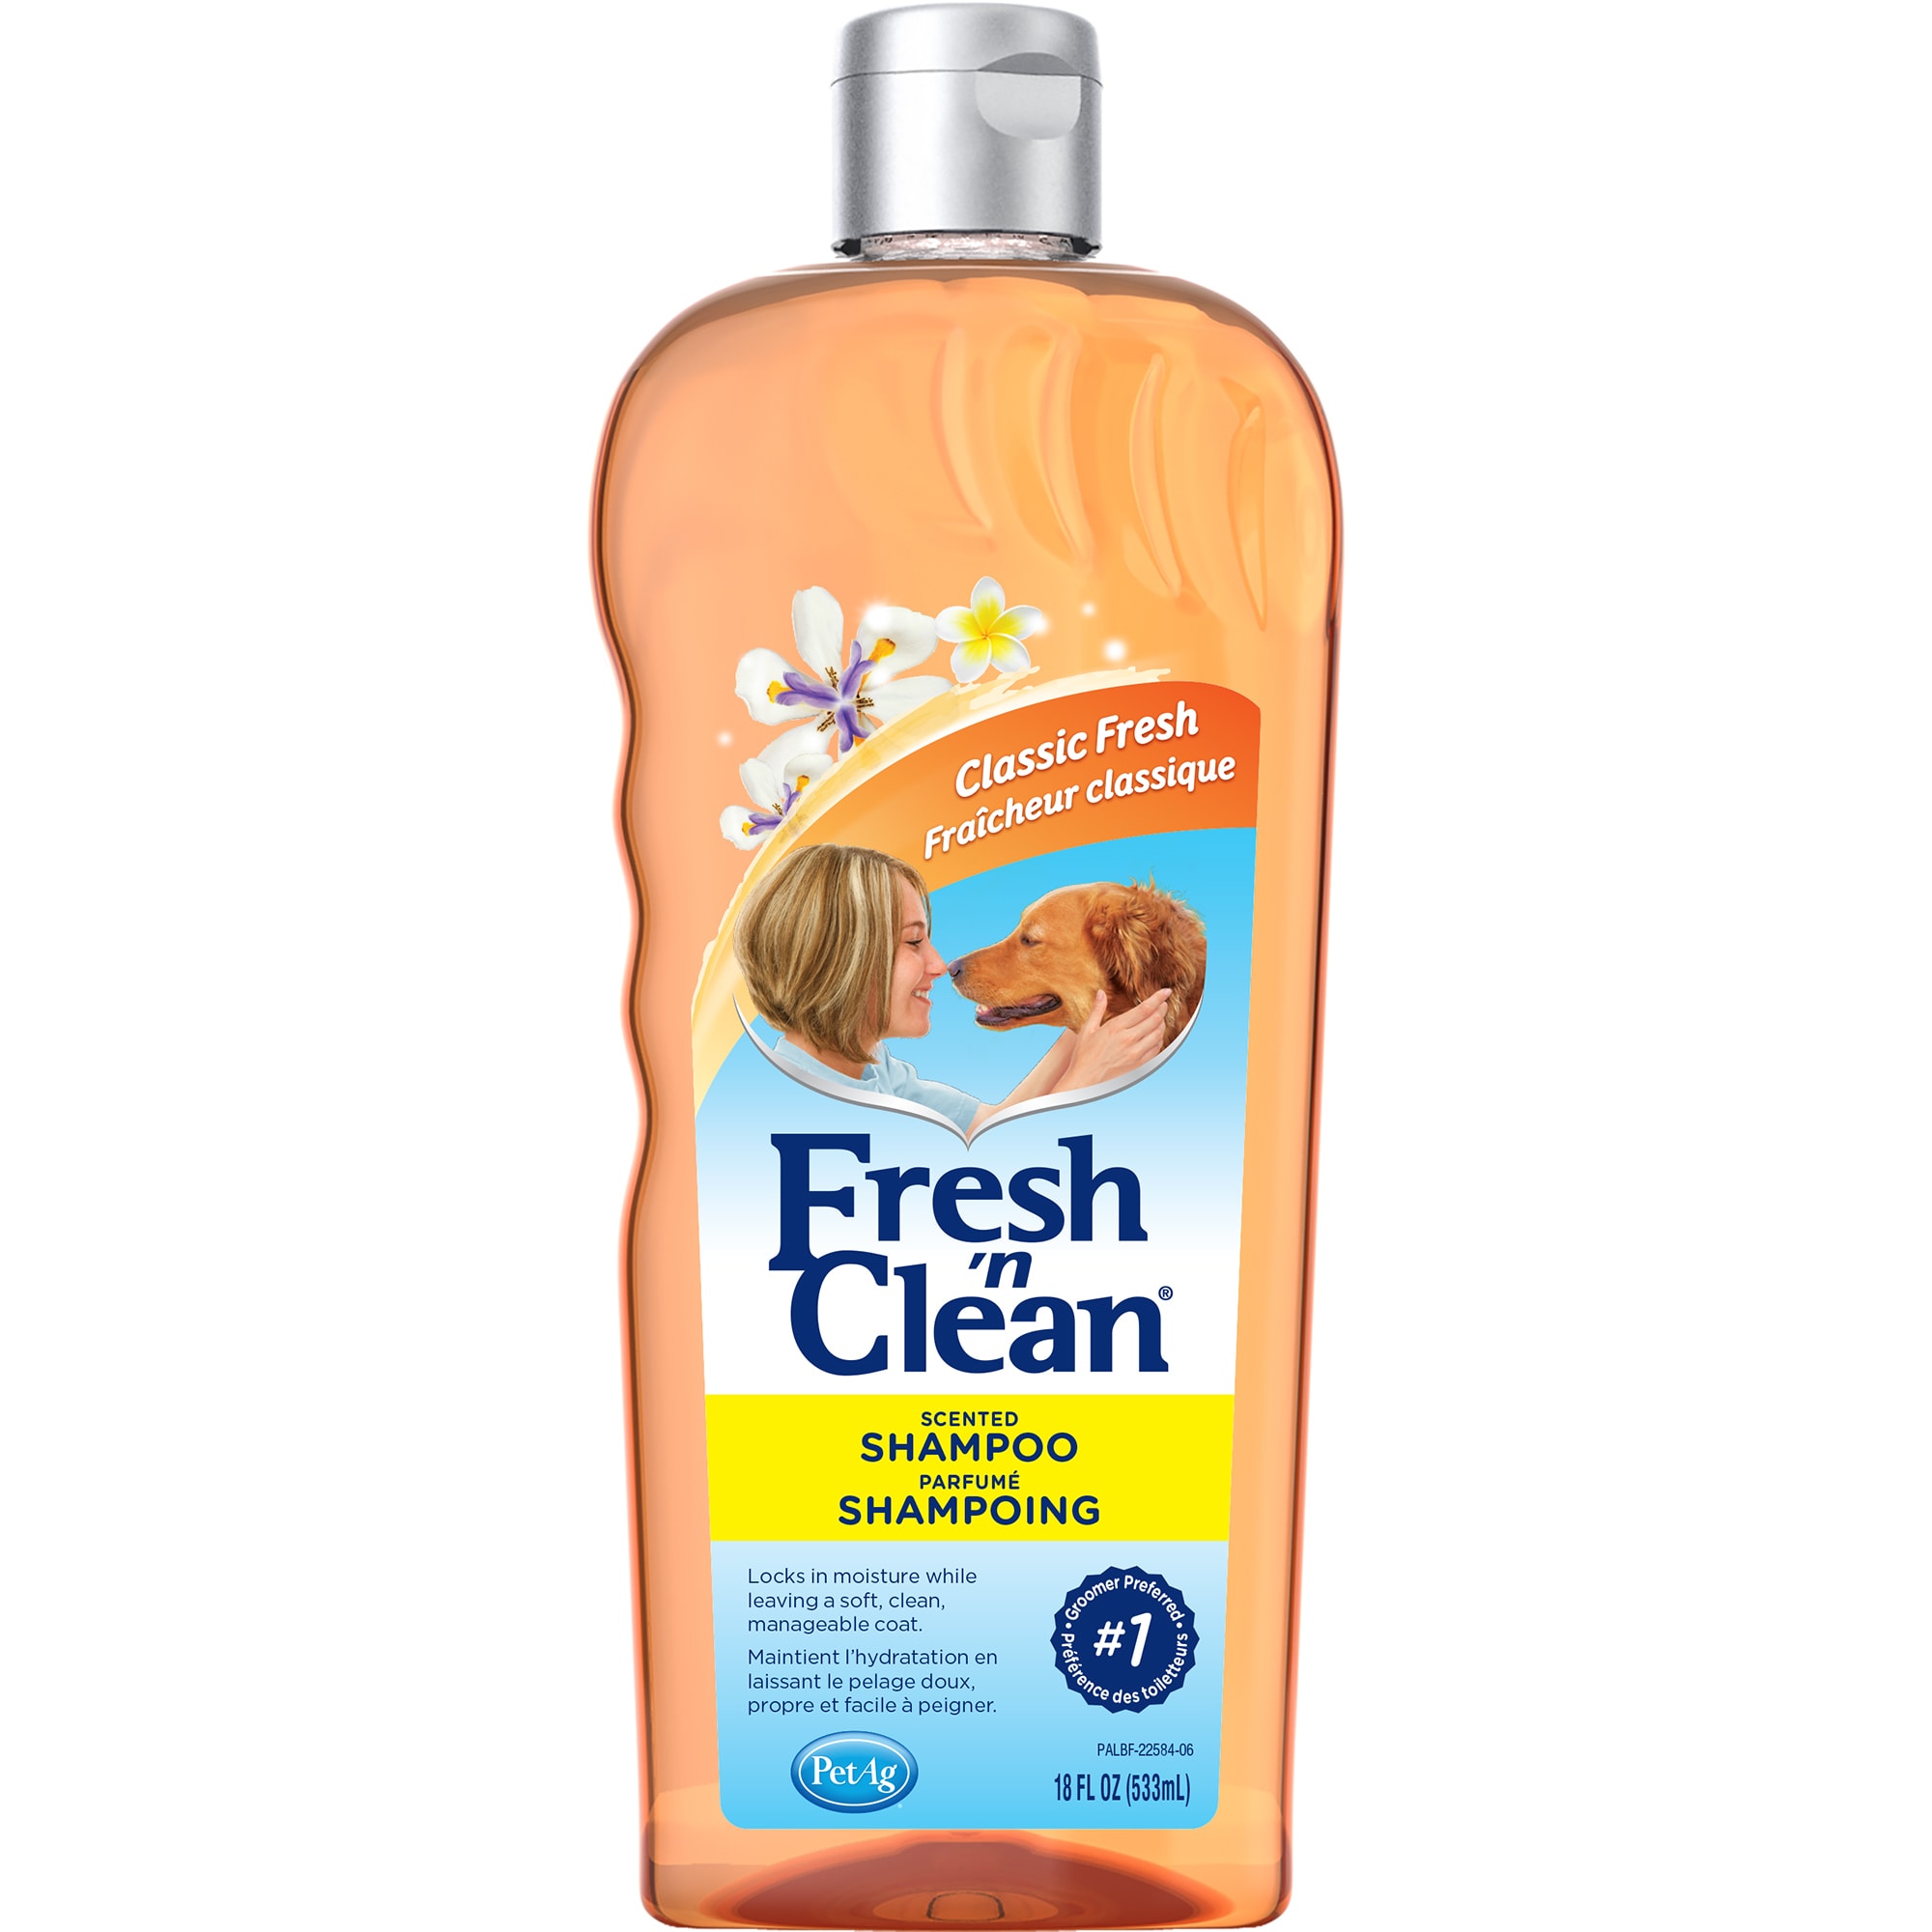 fresh and clean dog shampoo